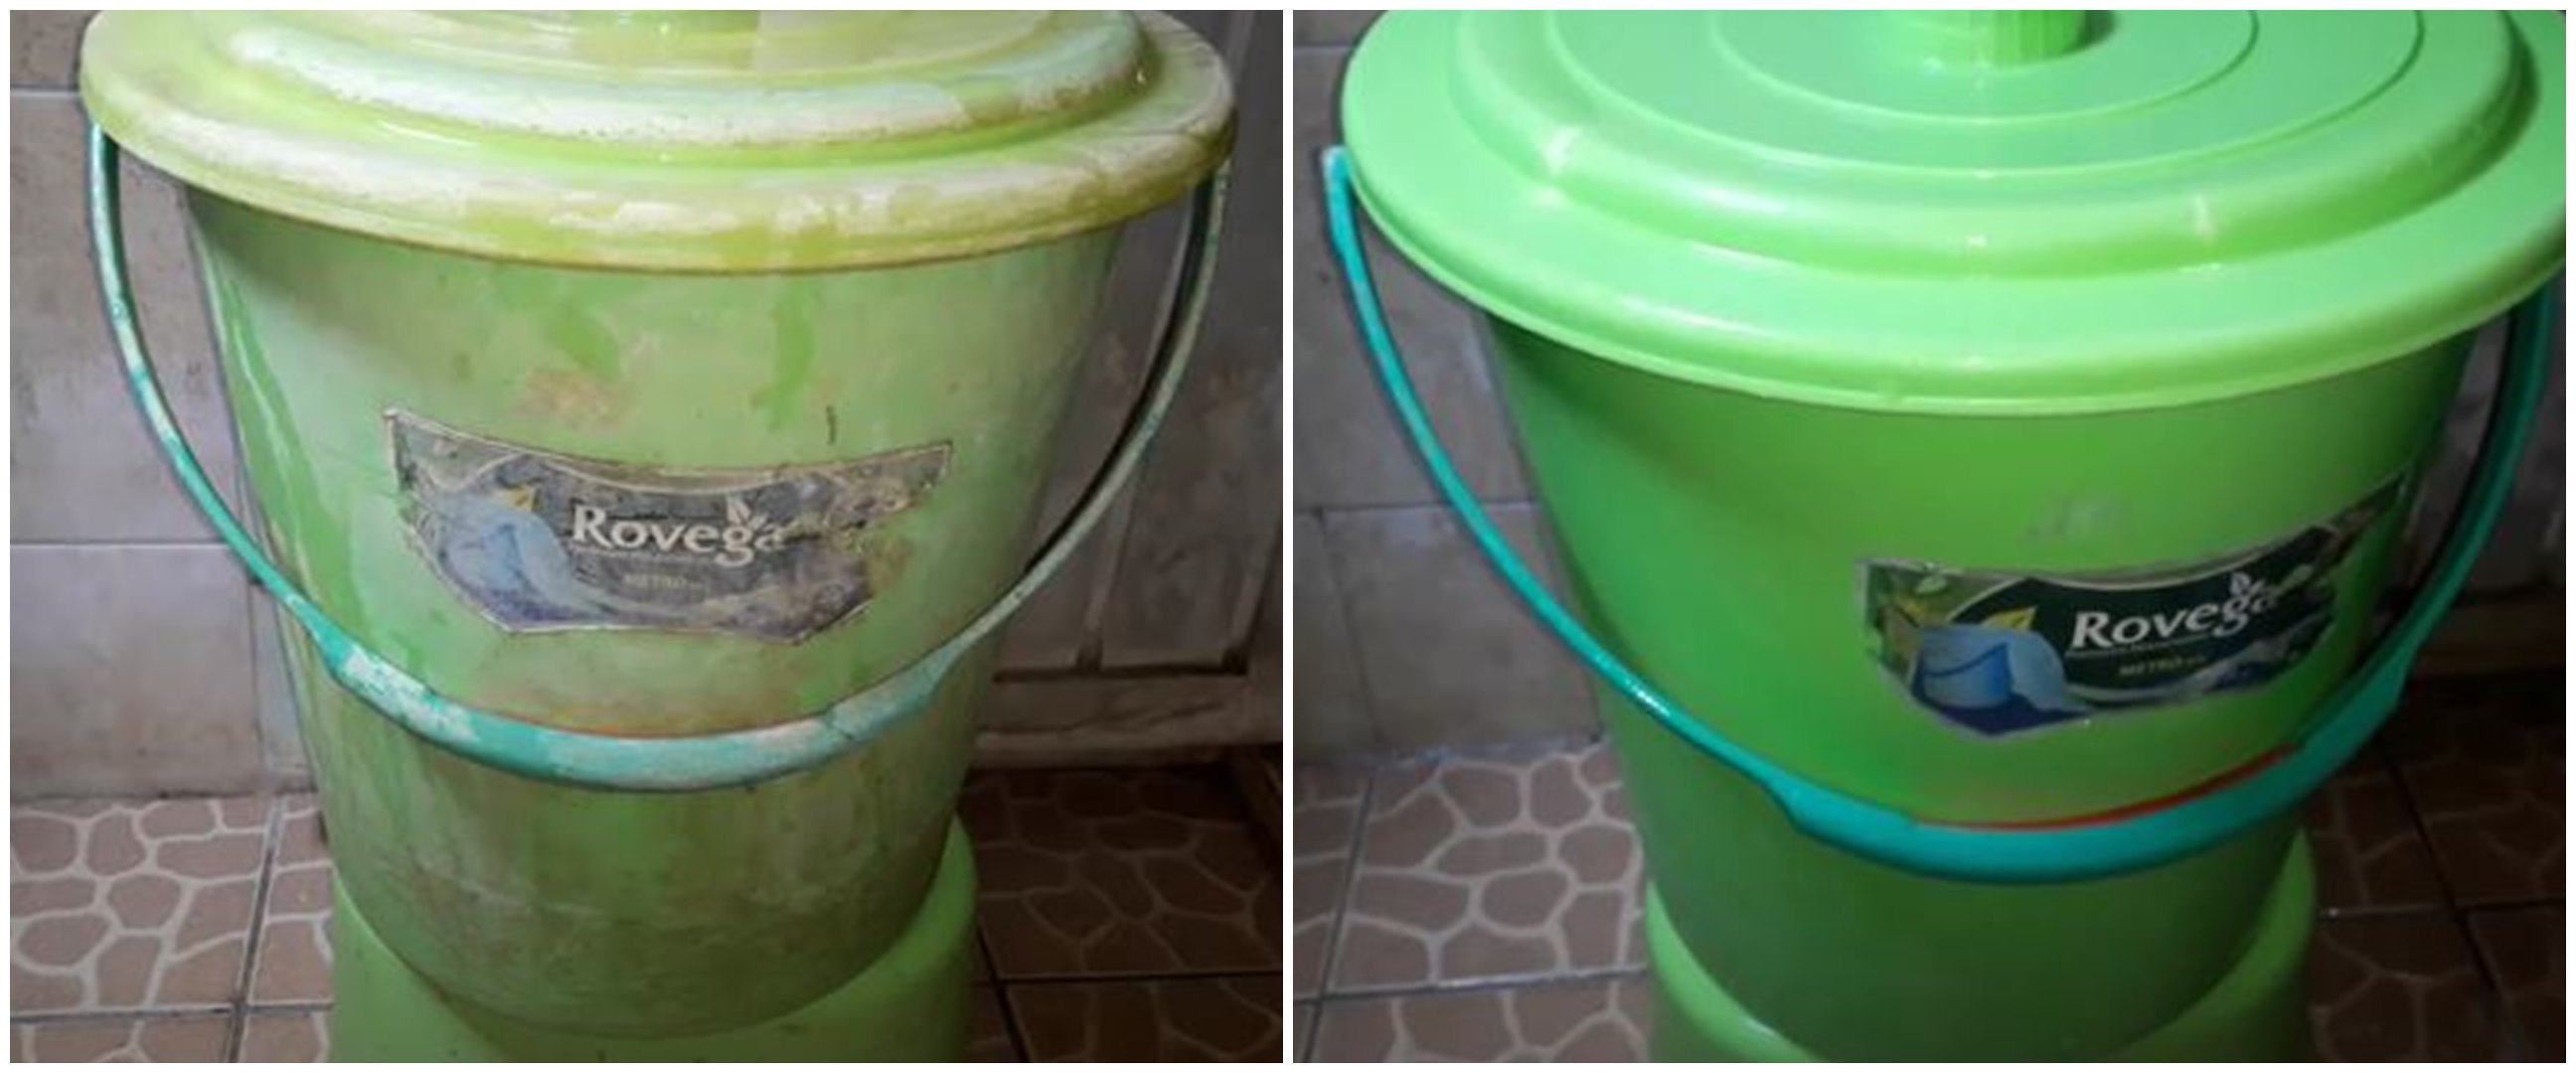 Trik sederhana atasi ember berkerak gunakan dua bahan cairan, hasilnya terlihat seperti baru